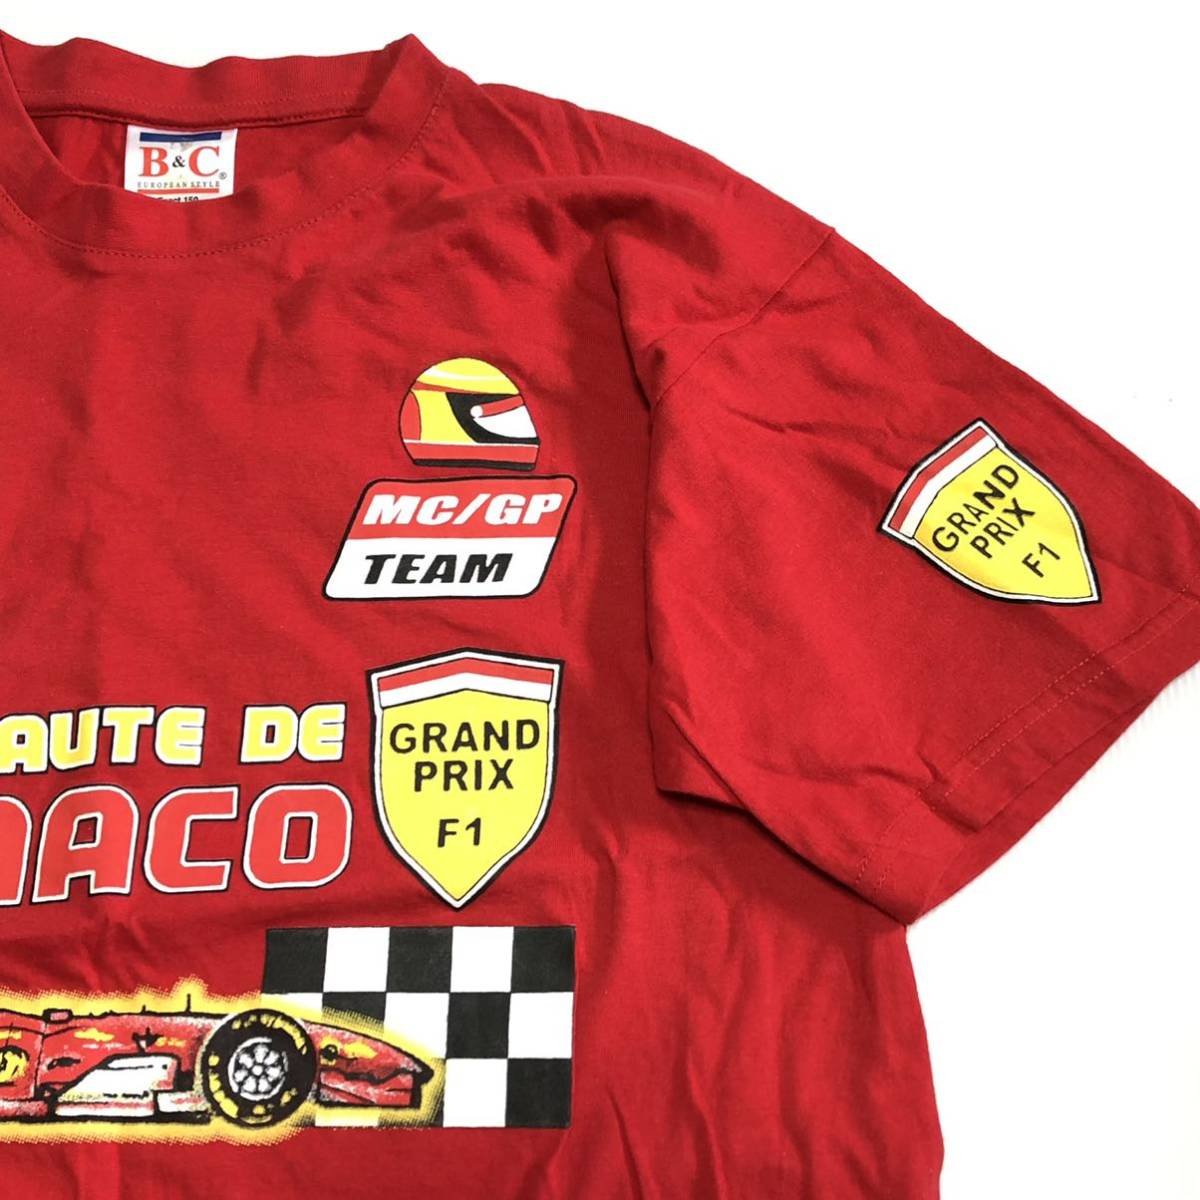 ◎ MONACO GRAND PRIX Tシャツ Sサイズ F1 MC/GP TEAM・world championship FORMULA ONE モナコ グランドプリックス レーシングチームの画像4